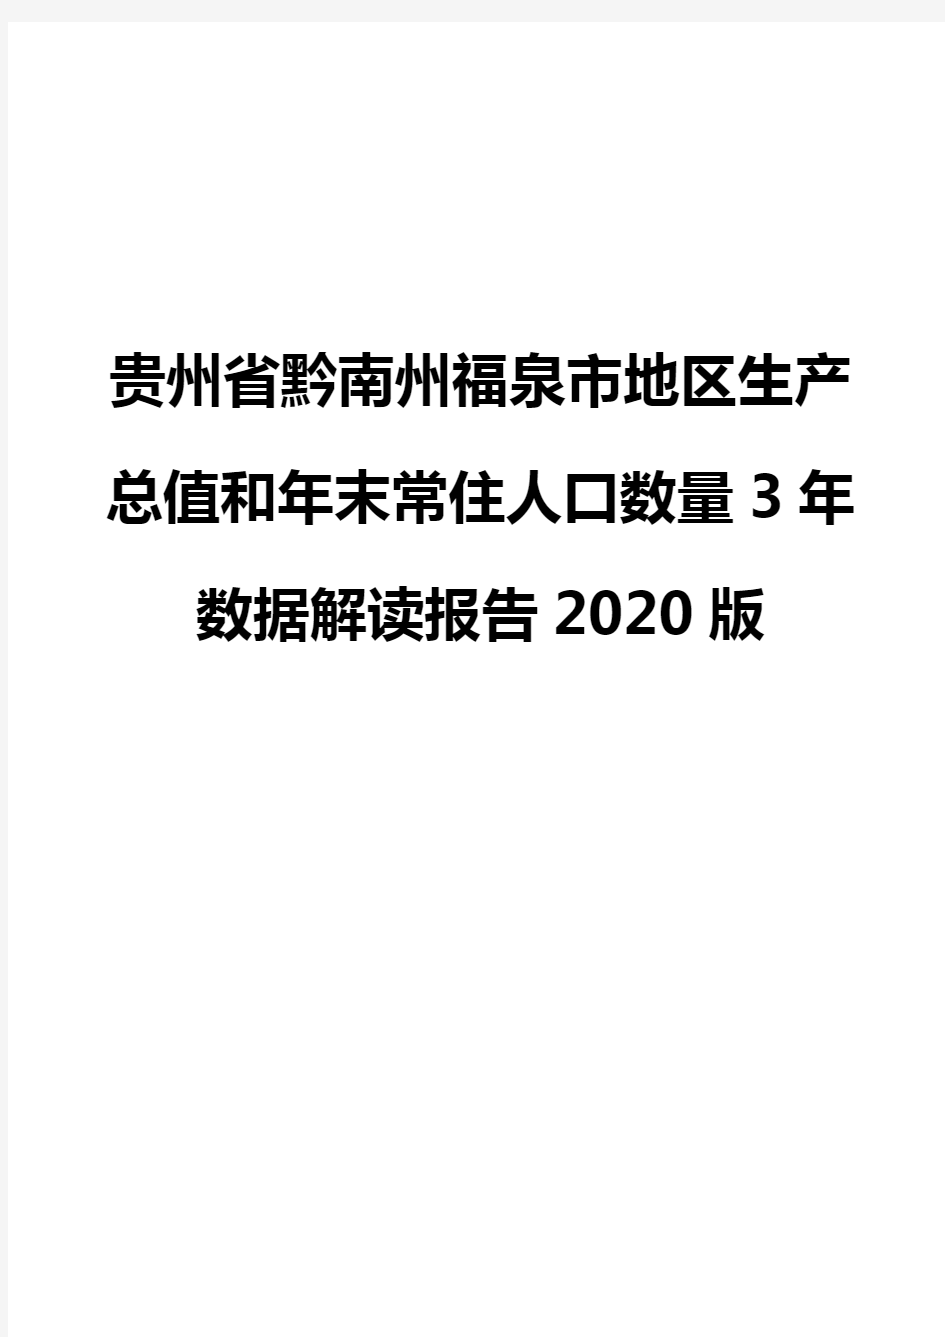 贵州省黔南州福泉市地区生产总值和年末常住人口数量3年数据解读报告2020版